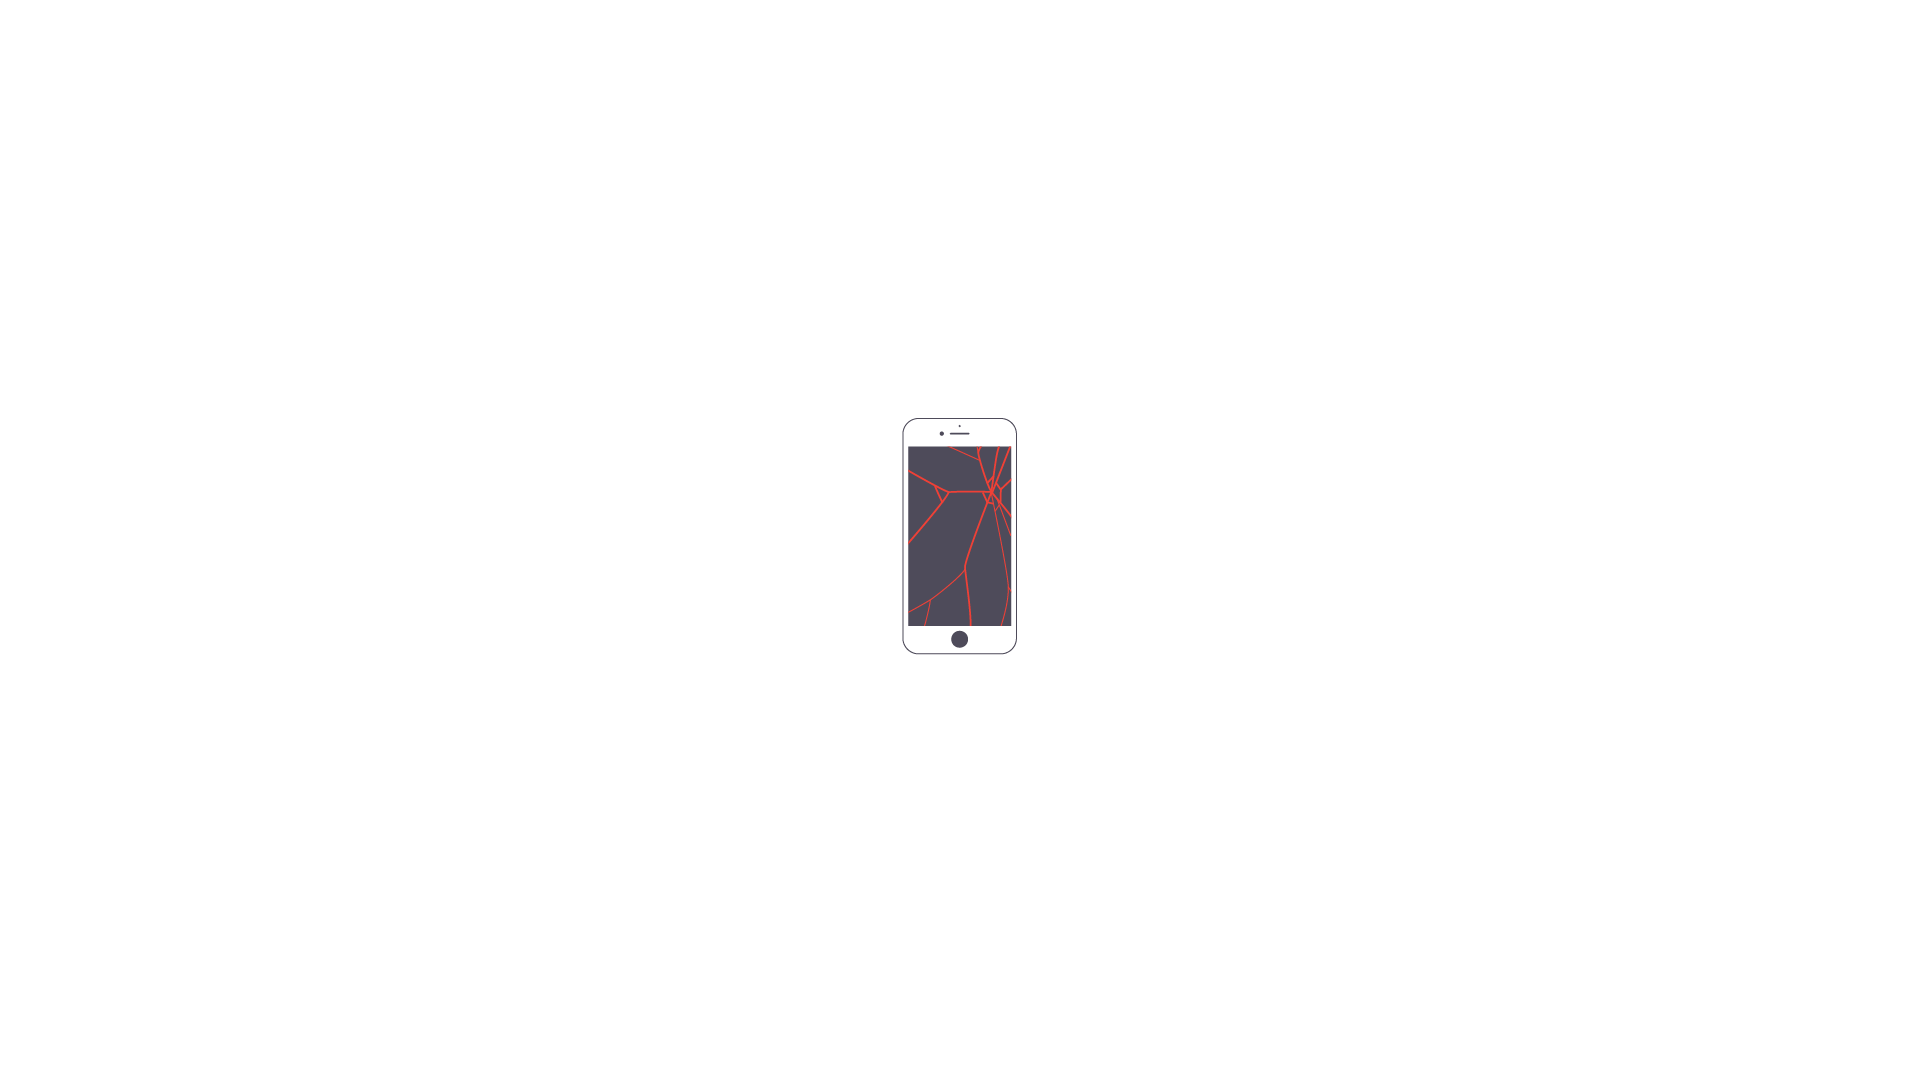 Réparation écran iPhone 6s blanc